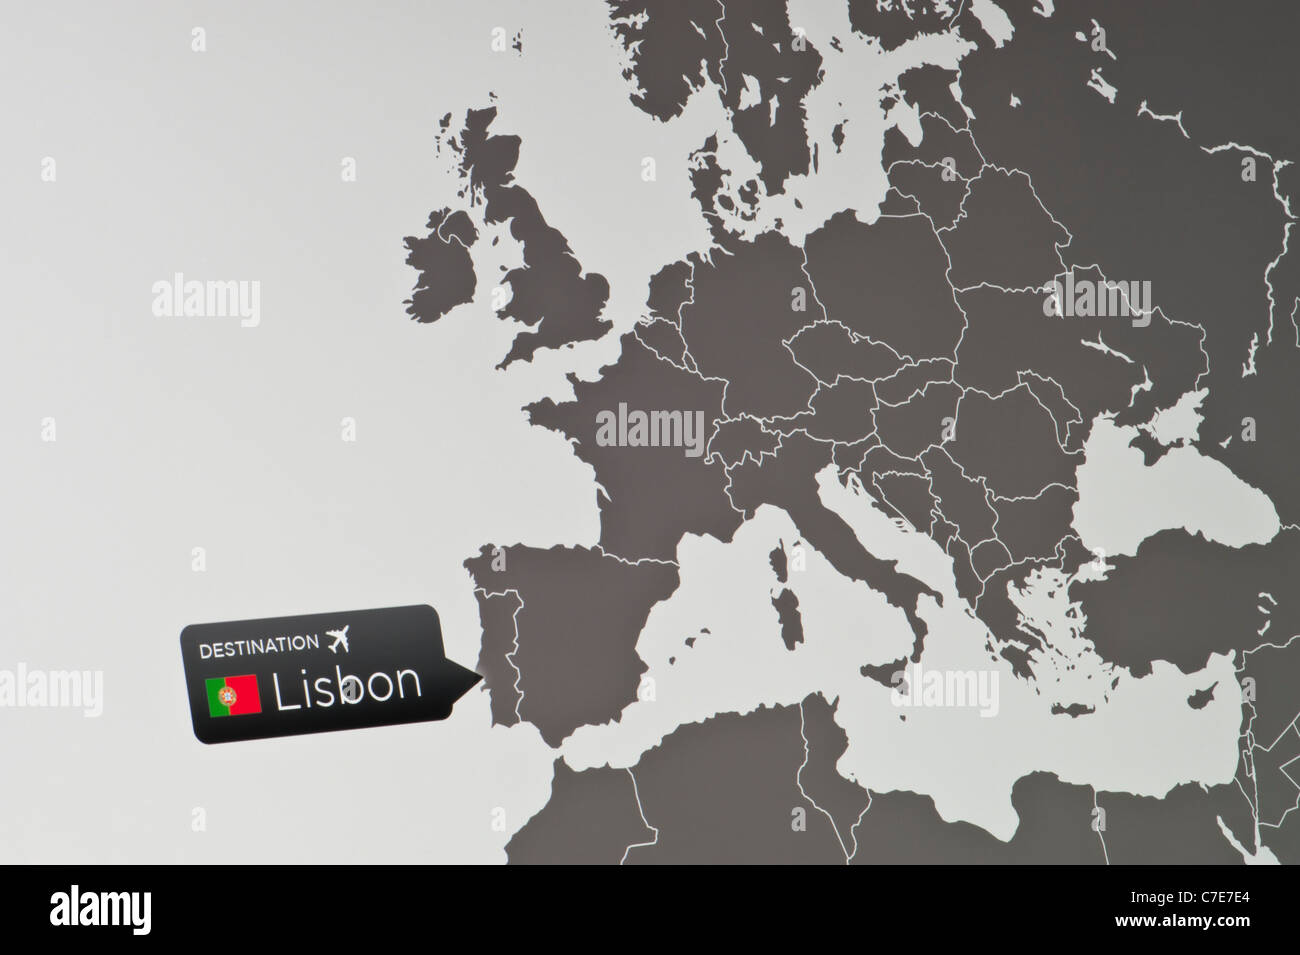 Un primer plano de una pantalla de ordenador que indican la ubicación del Aeropuerto Internacional de Lisboa, Portugal. Foto de stock